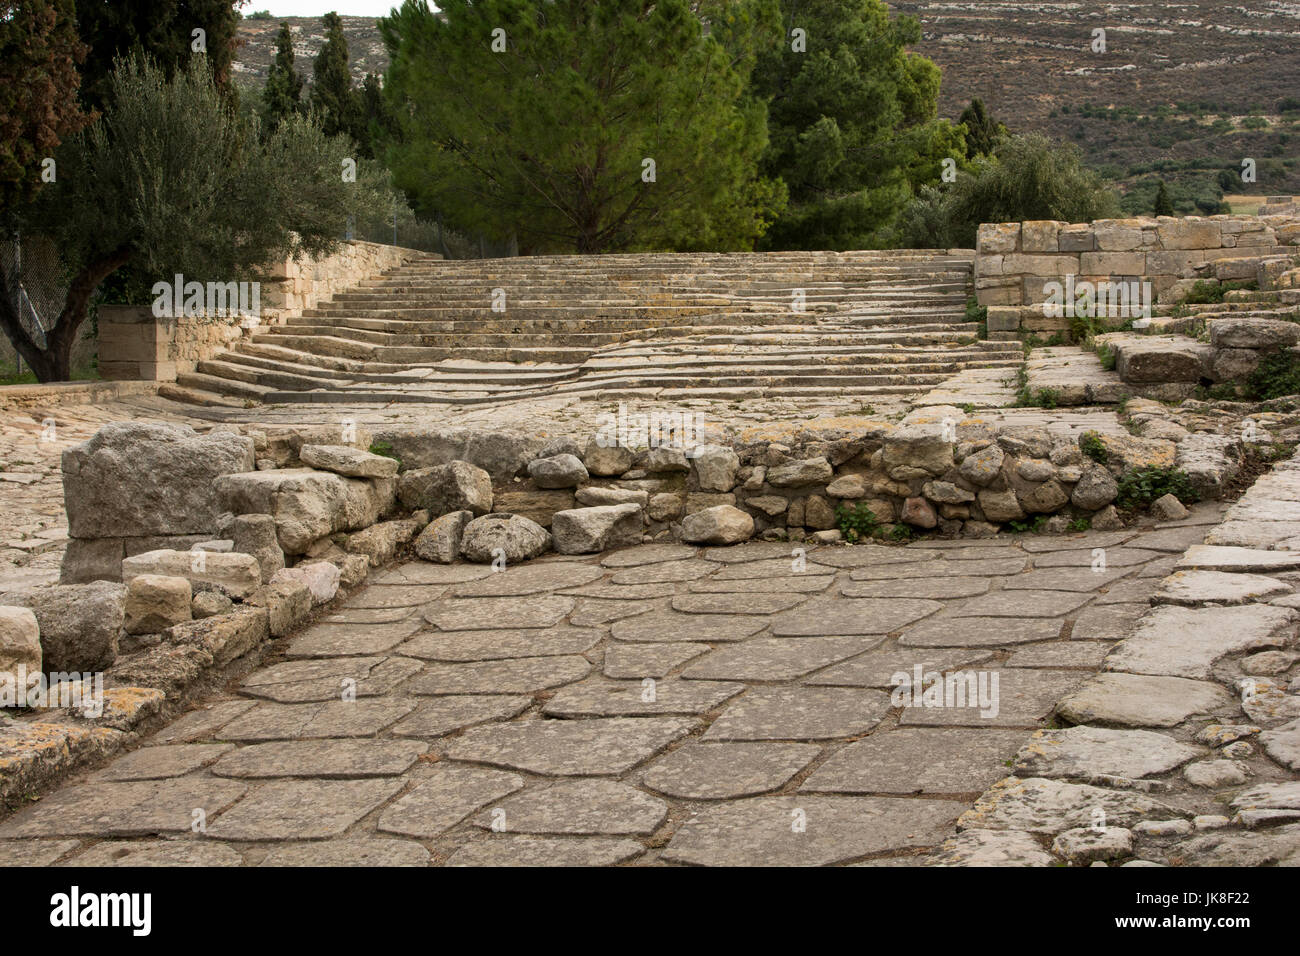 Le Palais de Knossos est le cérémonial et centre politique de la civilisation minoenne. La Route Royale qui relie le port avec le palais. Banque D'Images